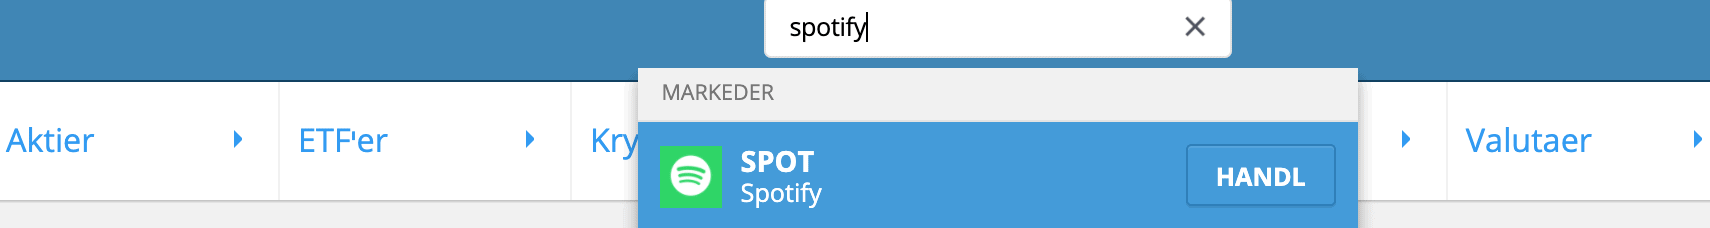 Soeg Spotify